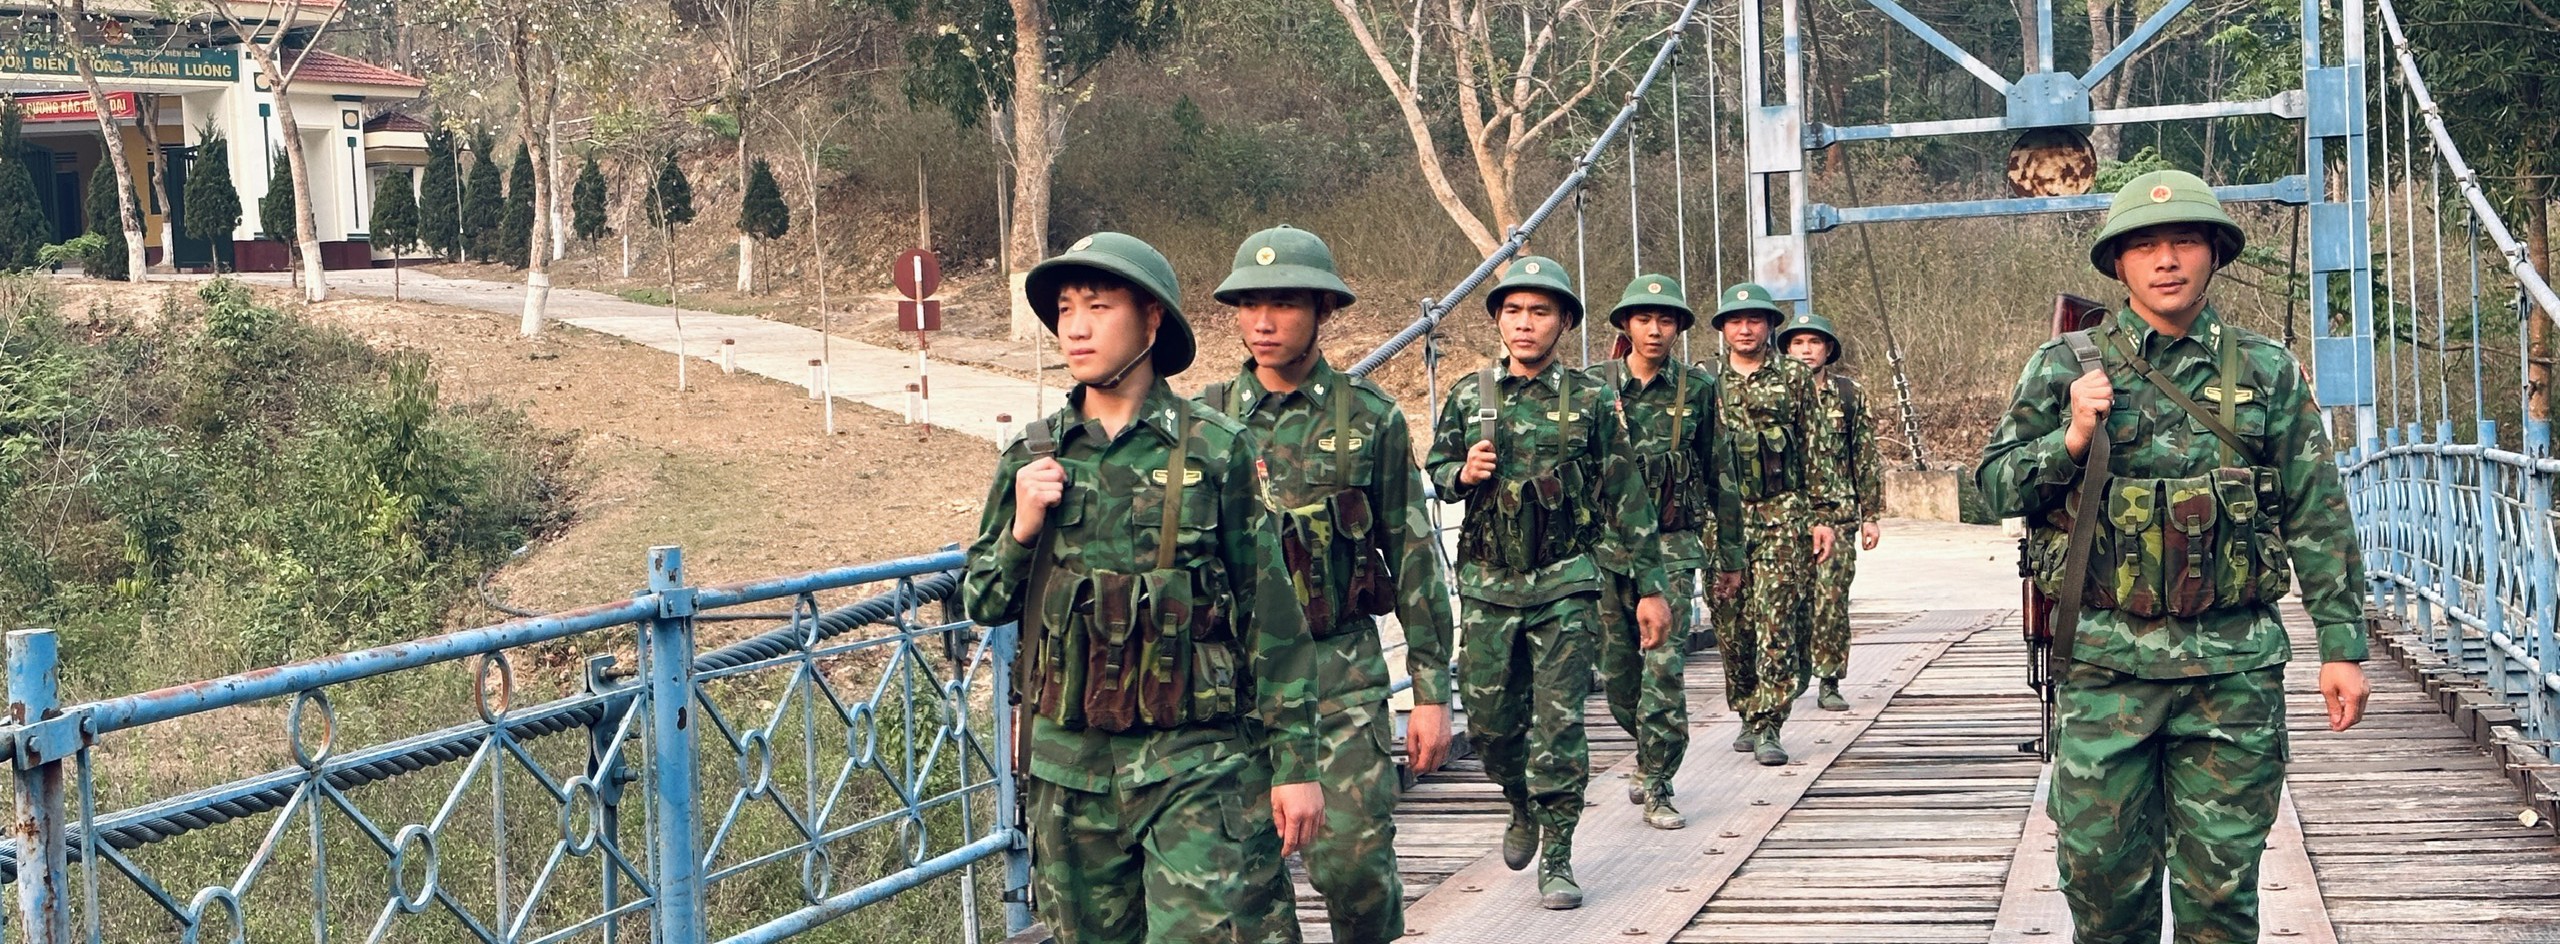 Bài 1 - Người Đội trưởng tận tụy ở Đồn Biên phòng Thanh Luông